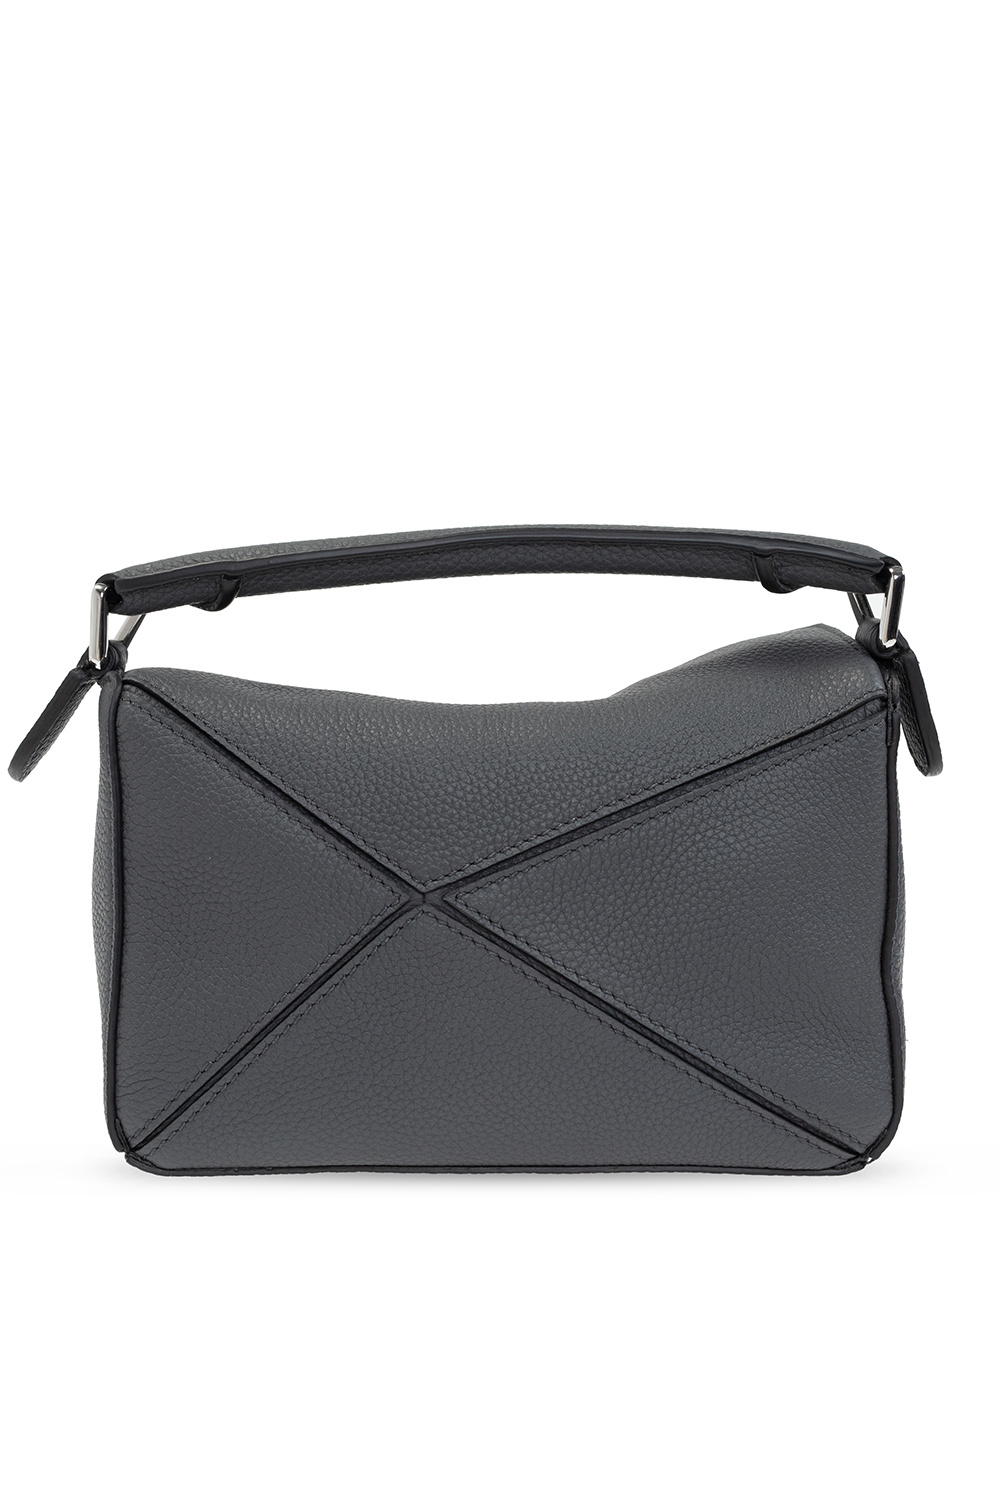 Loewe ‘Puzzle Mini’ shoulder bag